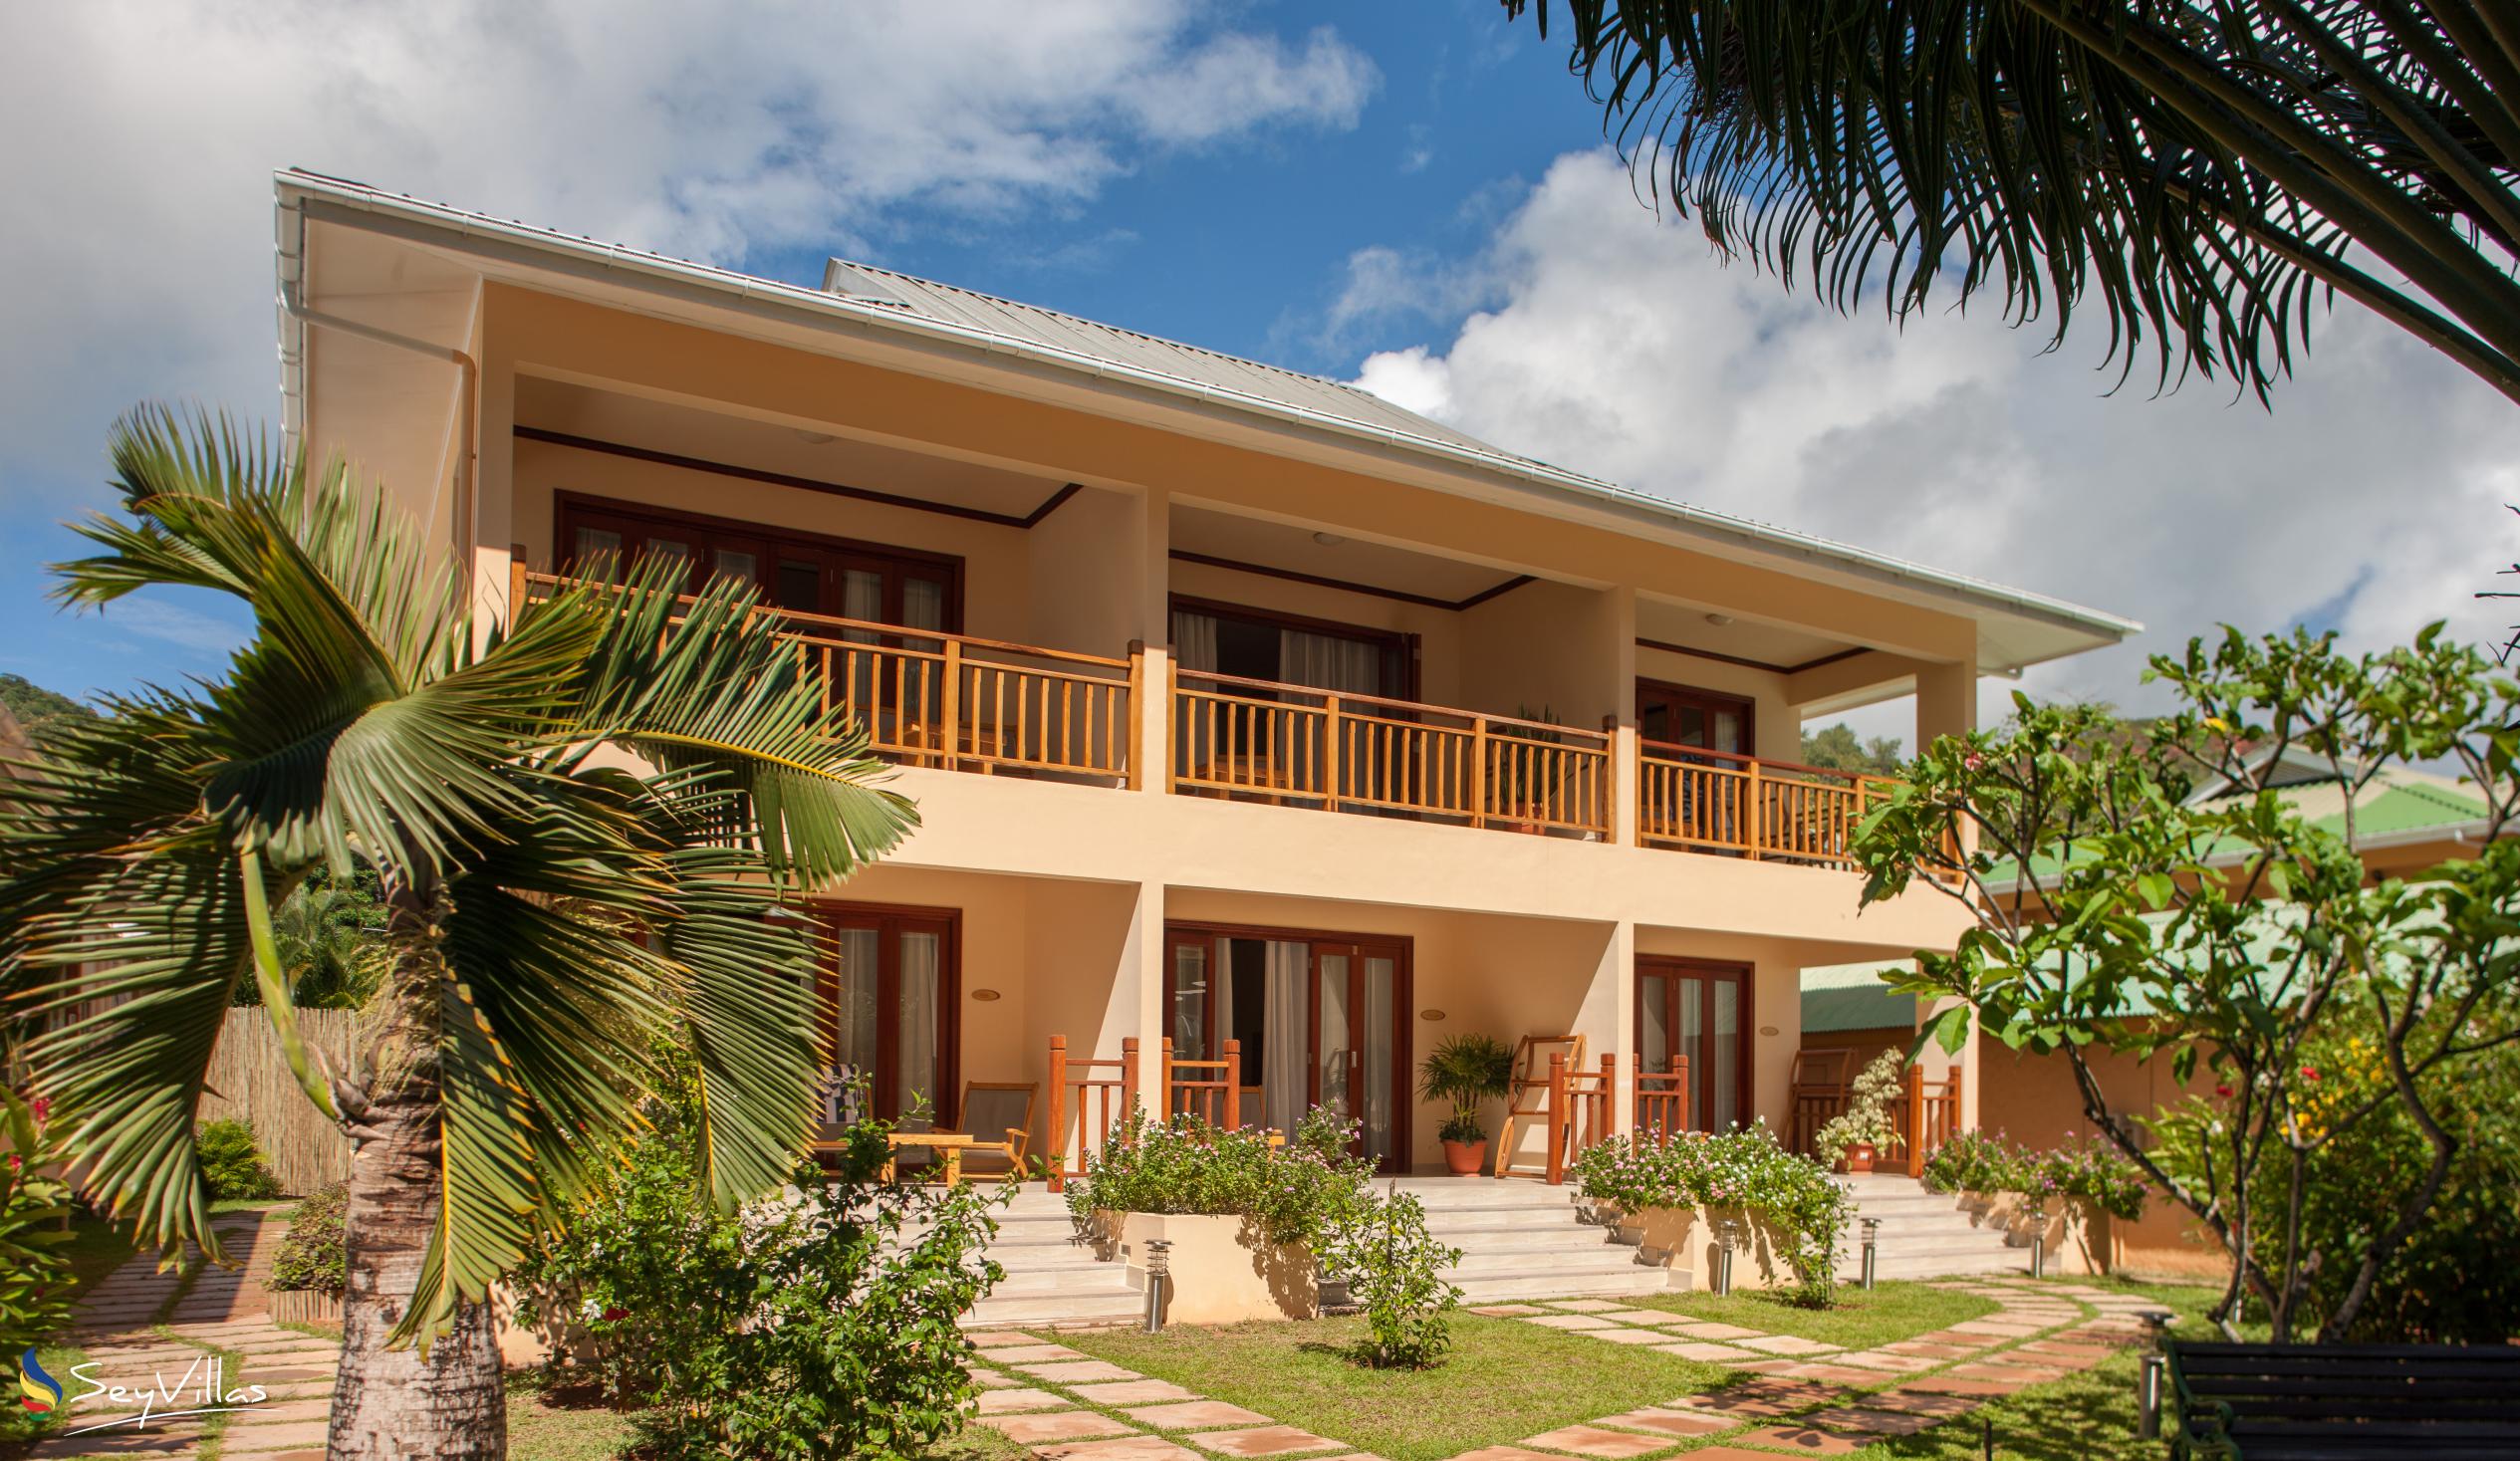 Foto 1: Pirogue Lodge - Aussenbereich - Praslin (Seychellen)